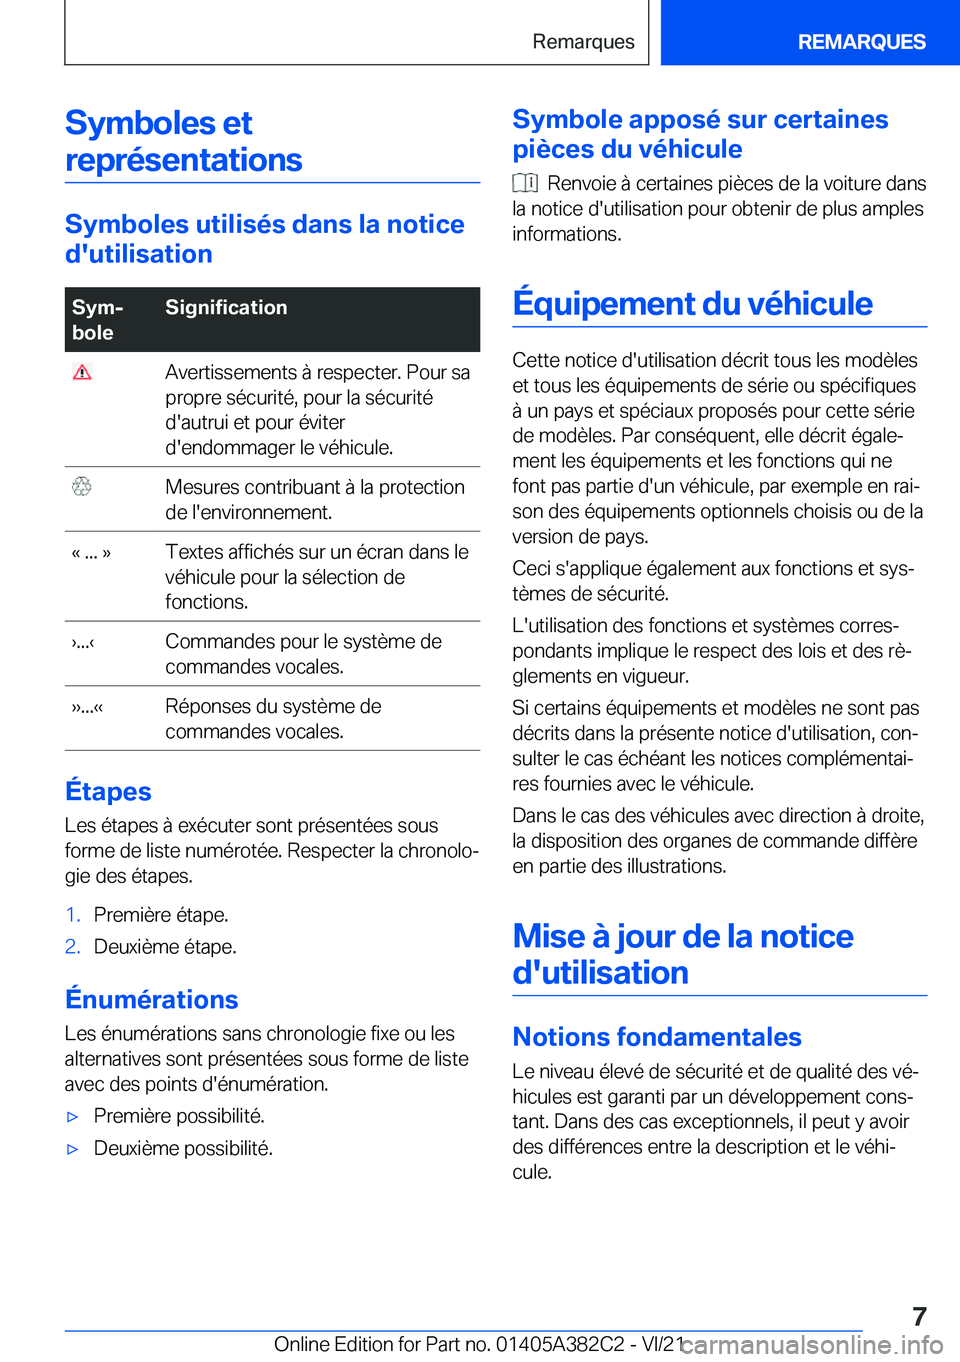 BMW Z4 2022  Notices Demploi (in French) �S�y�m�b�o�l�e�s��e�t�r�e�p�r�é�s�e�n�t�a�t�i�o�n�s
�S�y�m�b�o�l�e�s��u�t�i�l�i�s�é�s��d�a�n�s��l�a��n�o�t�i�c�e
�d�'�u�t�i�l�i�s�a�t�i�o�n
�S�y�mj
�b�o�l�e�S�i�g�n�i�f�i�c�a�t�i�o�n��A�v